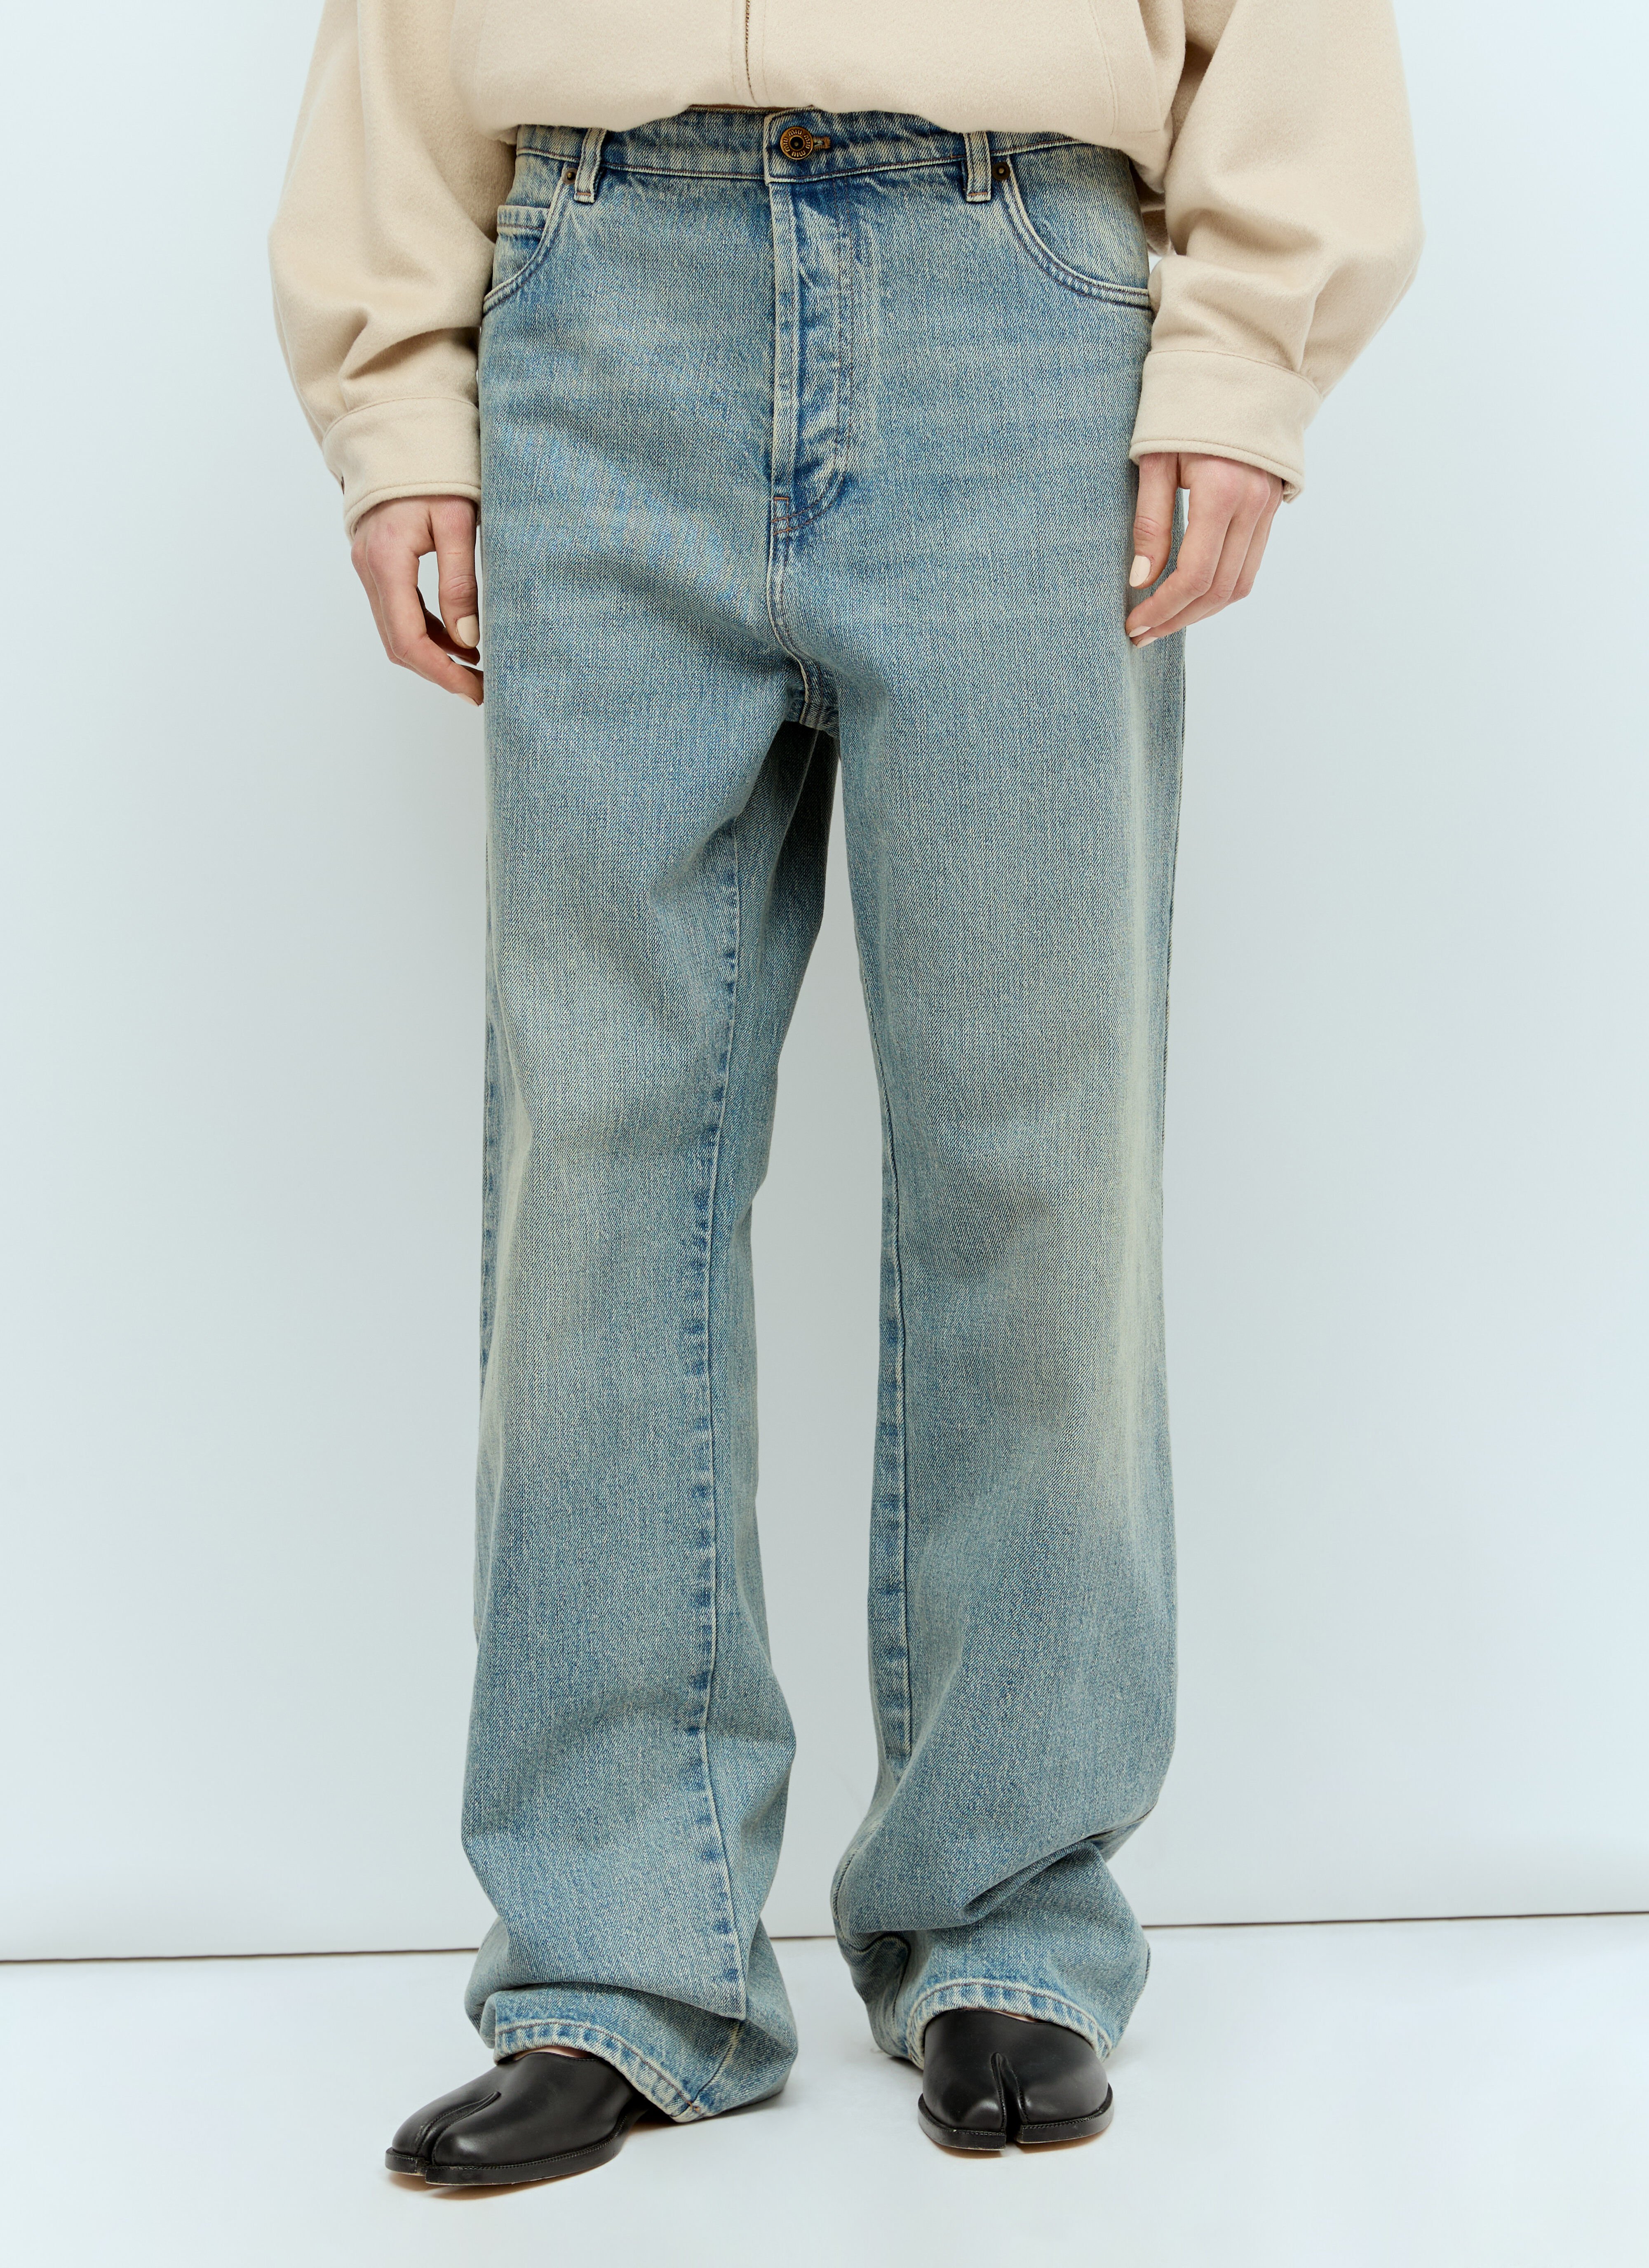 Jean Paul Gaultier x Shayne Oliver Five Pocket Jeans Brown jps0257003